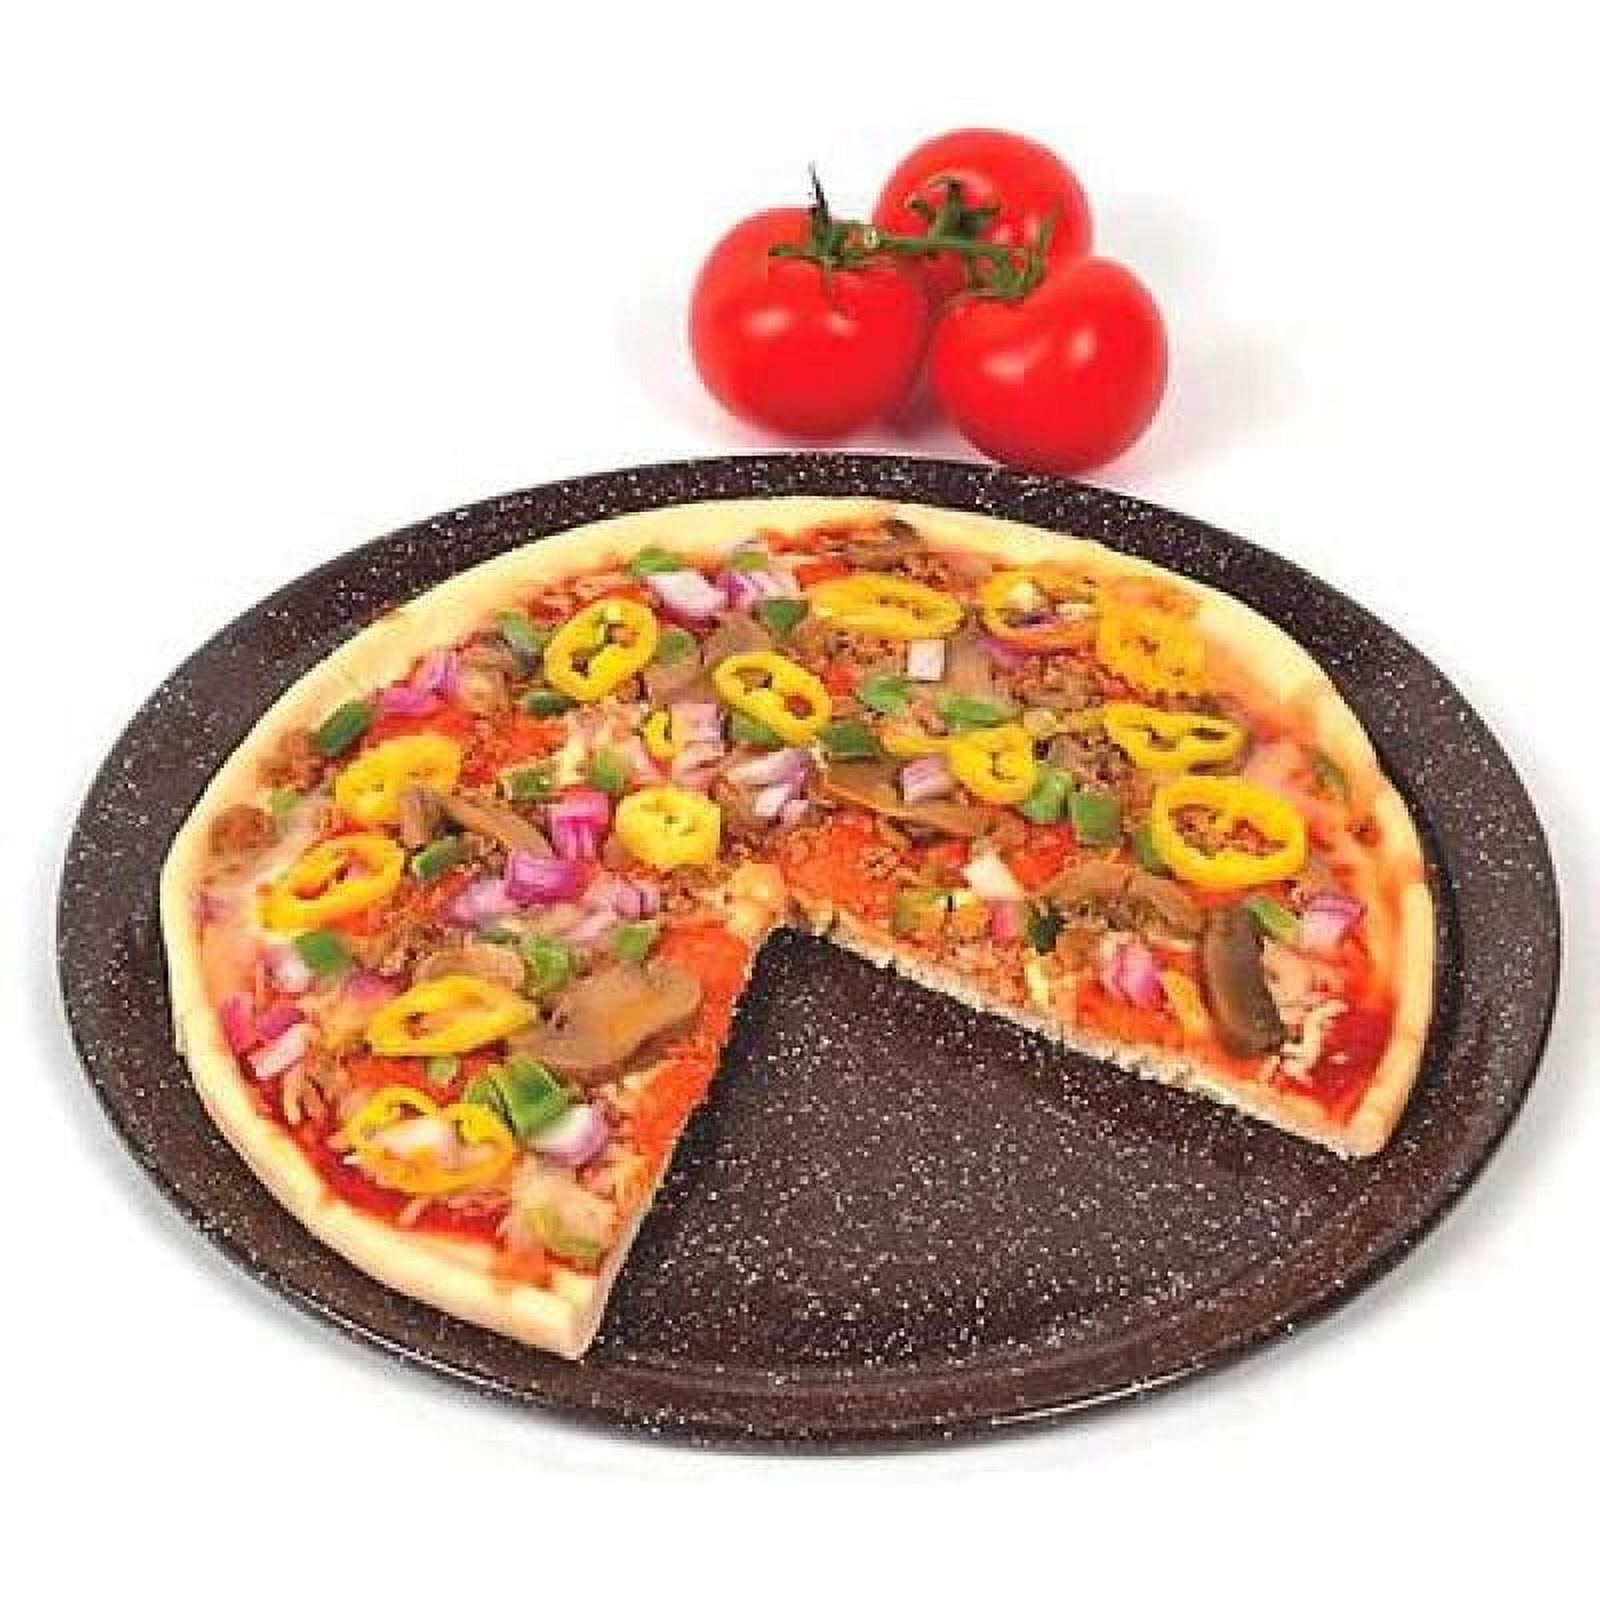 Original Pan® Pizza - Order Online!